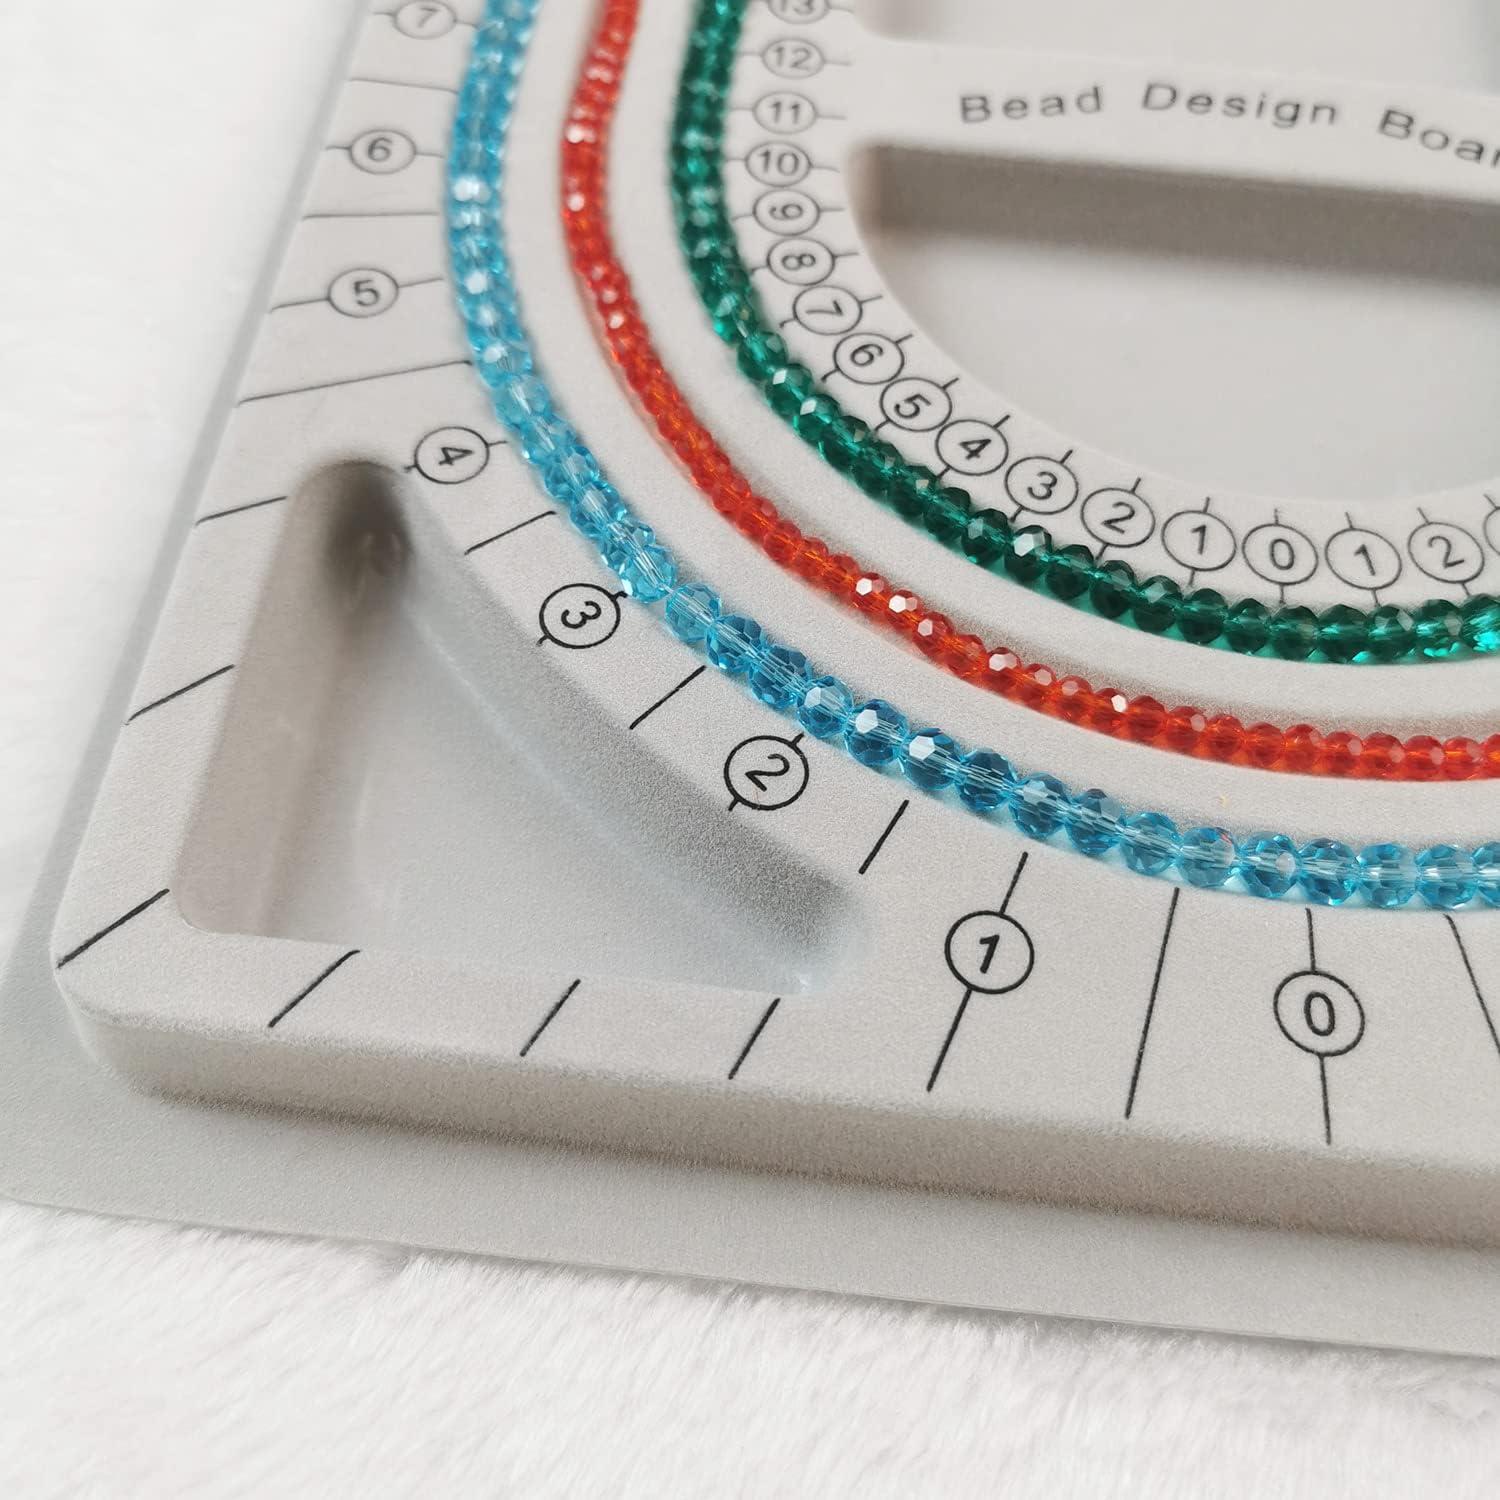  Bracelet Design Board Flocked Bead Board Bracelet